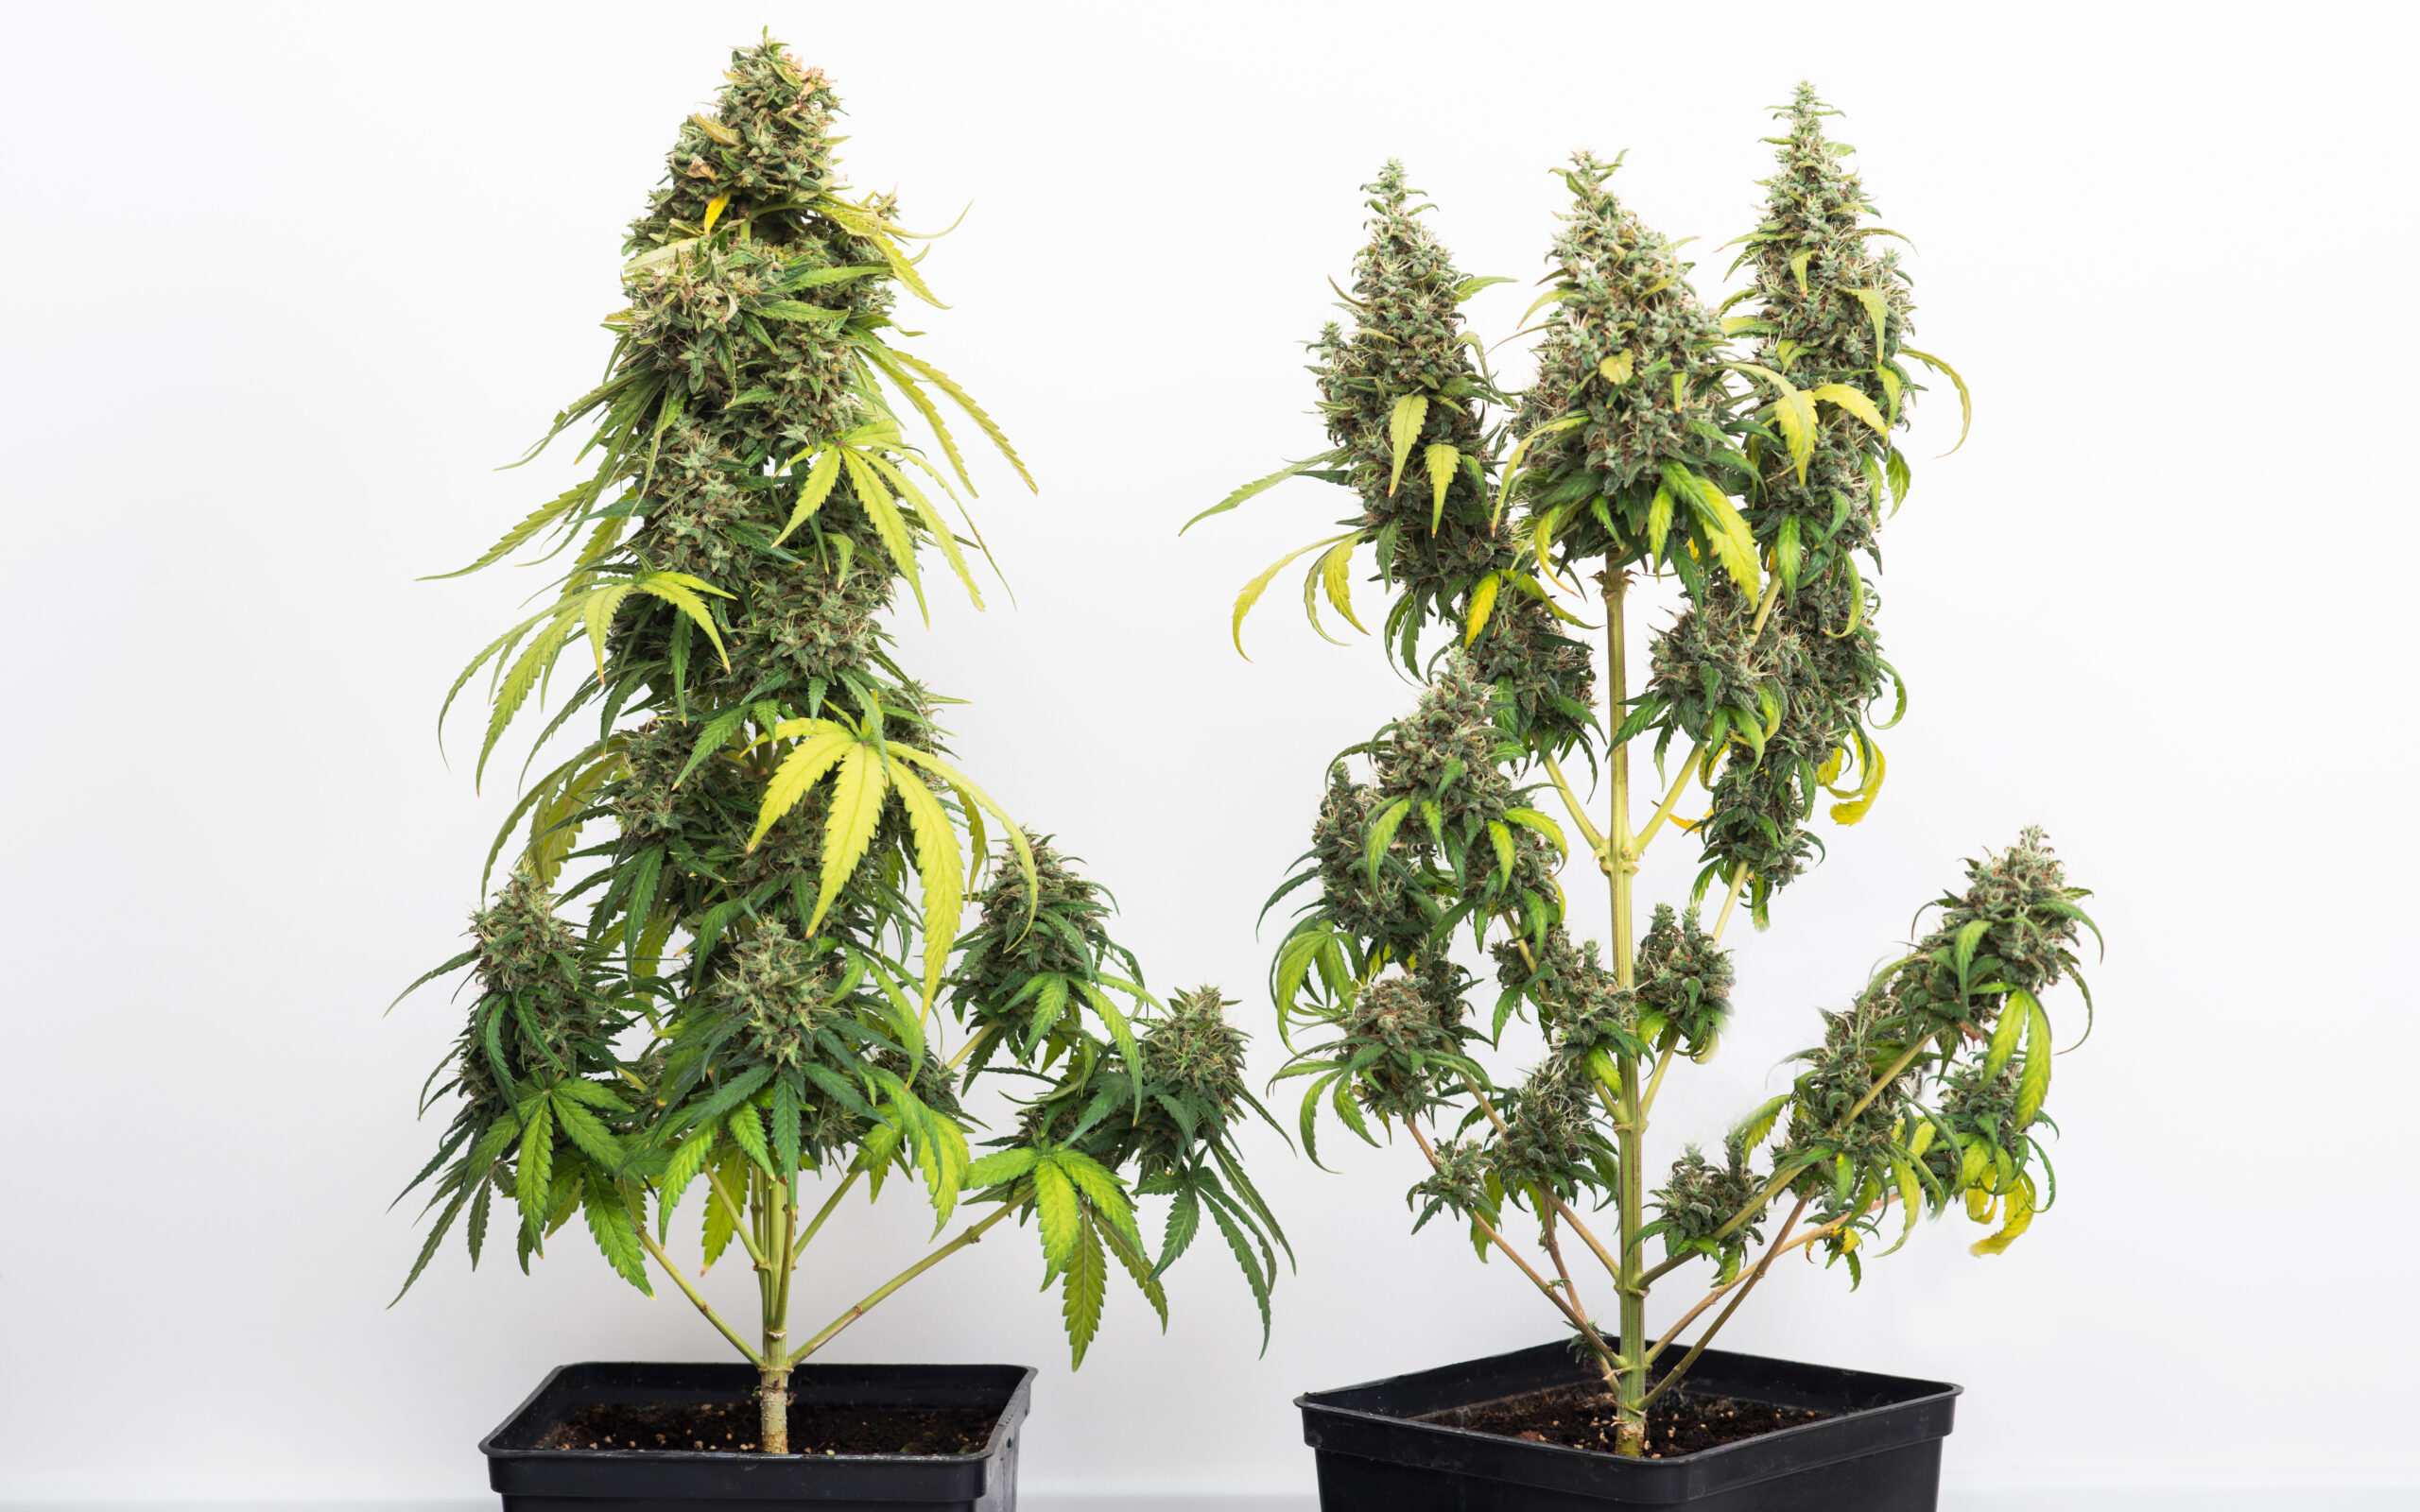 En este artículo intentaremos guiarte de la mejor manera posible para que puedas empezar a cultivar tu propio planta de marihuana.